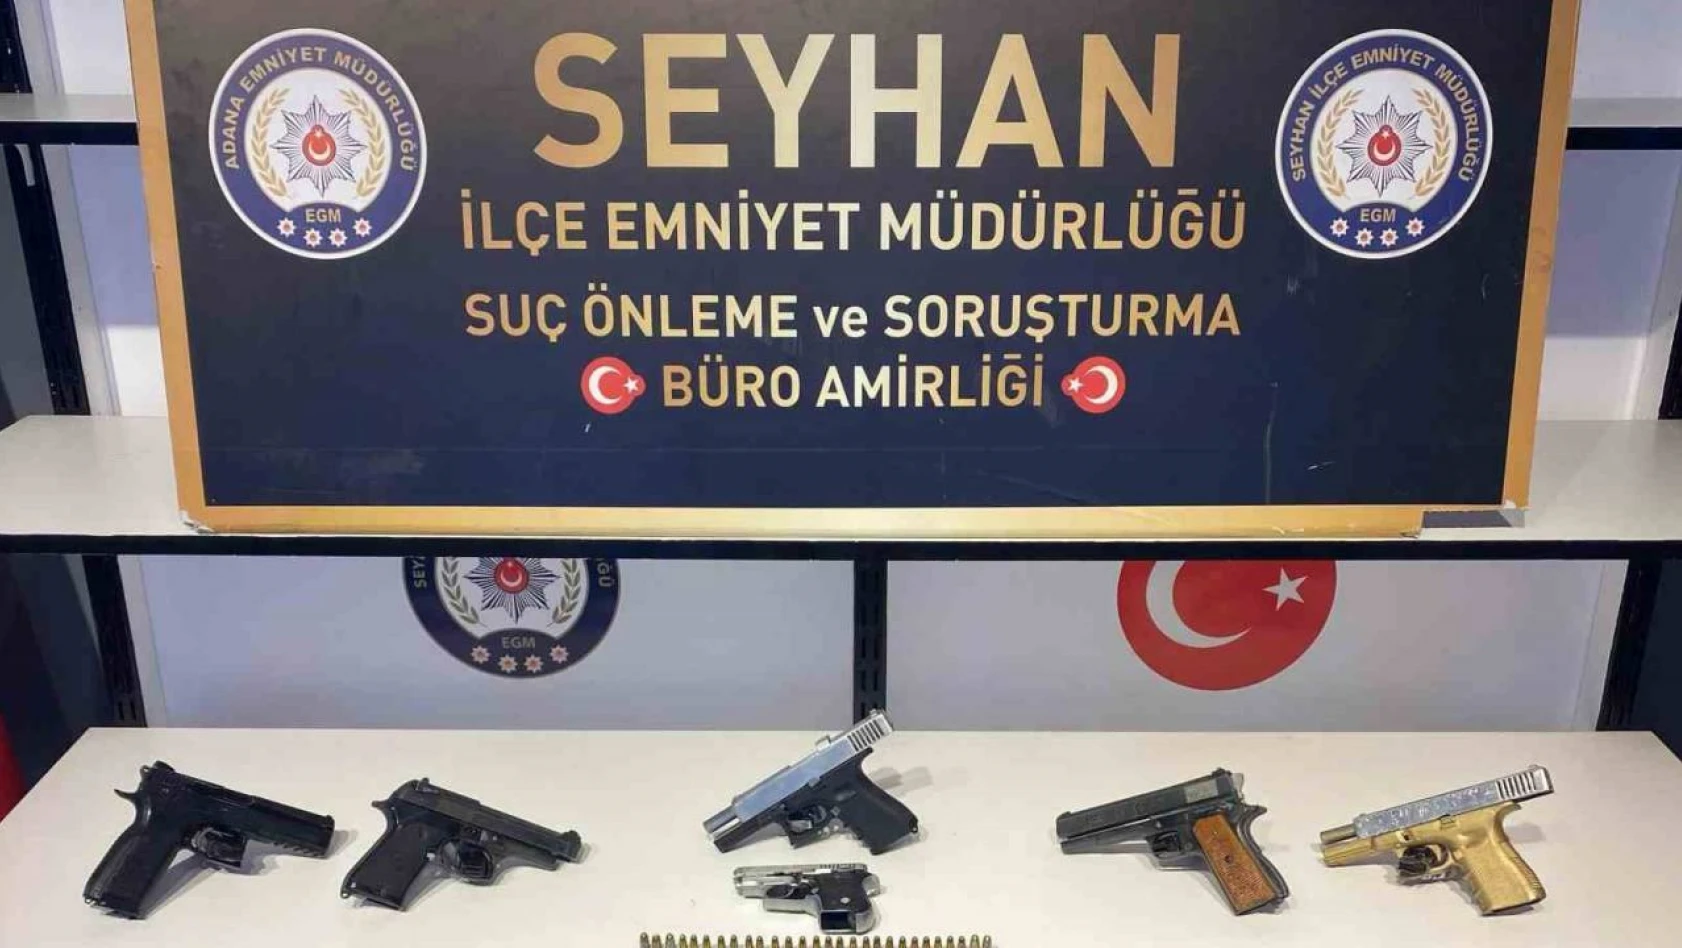 Adana'da Operasyon! - 1 Gözaltı Var